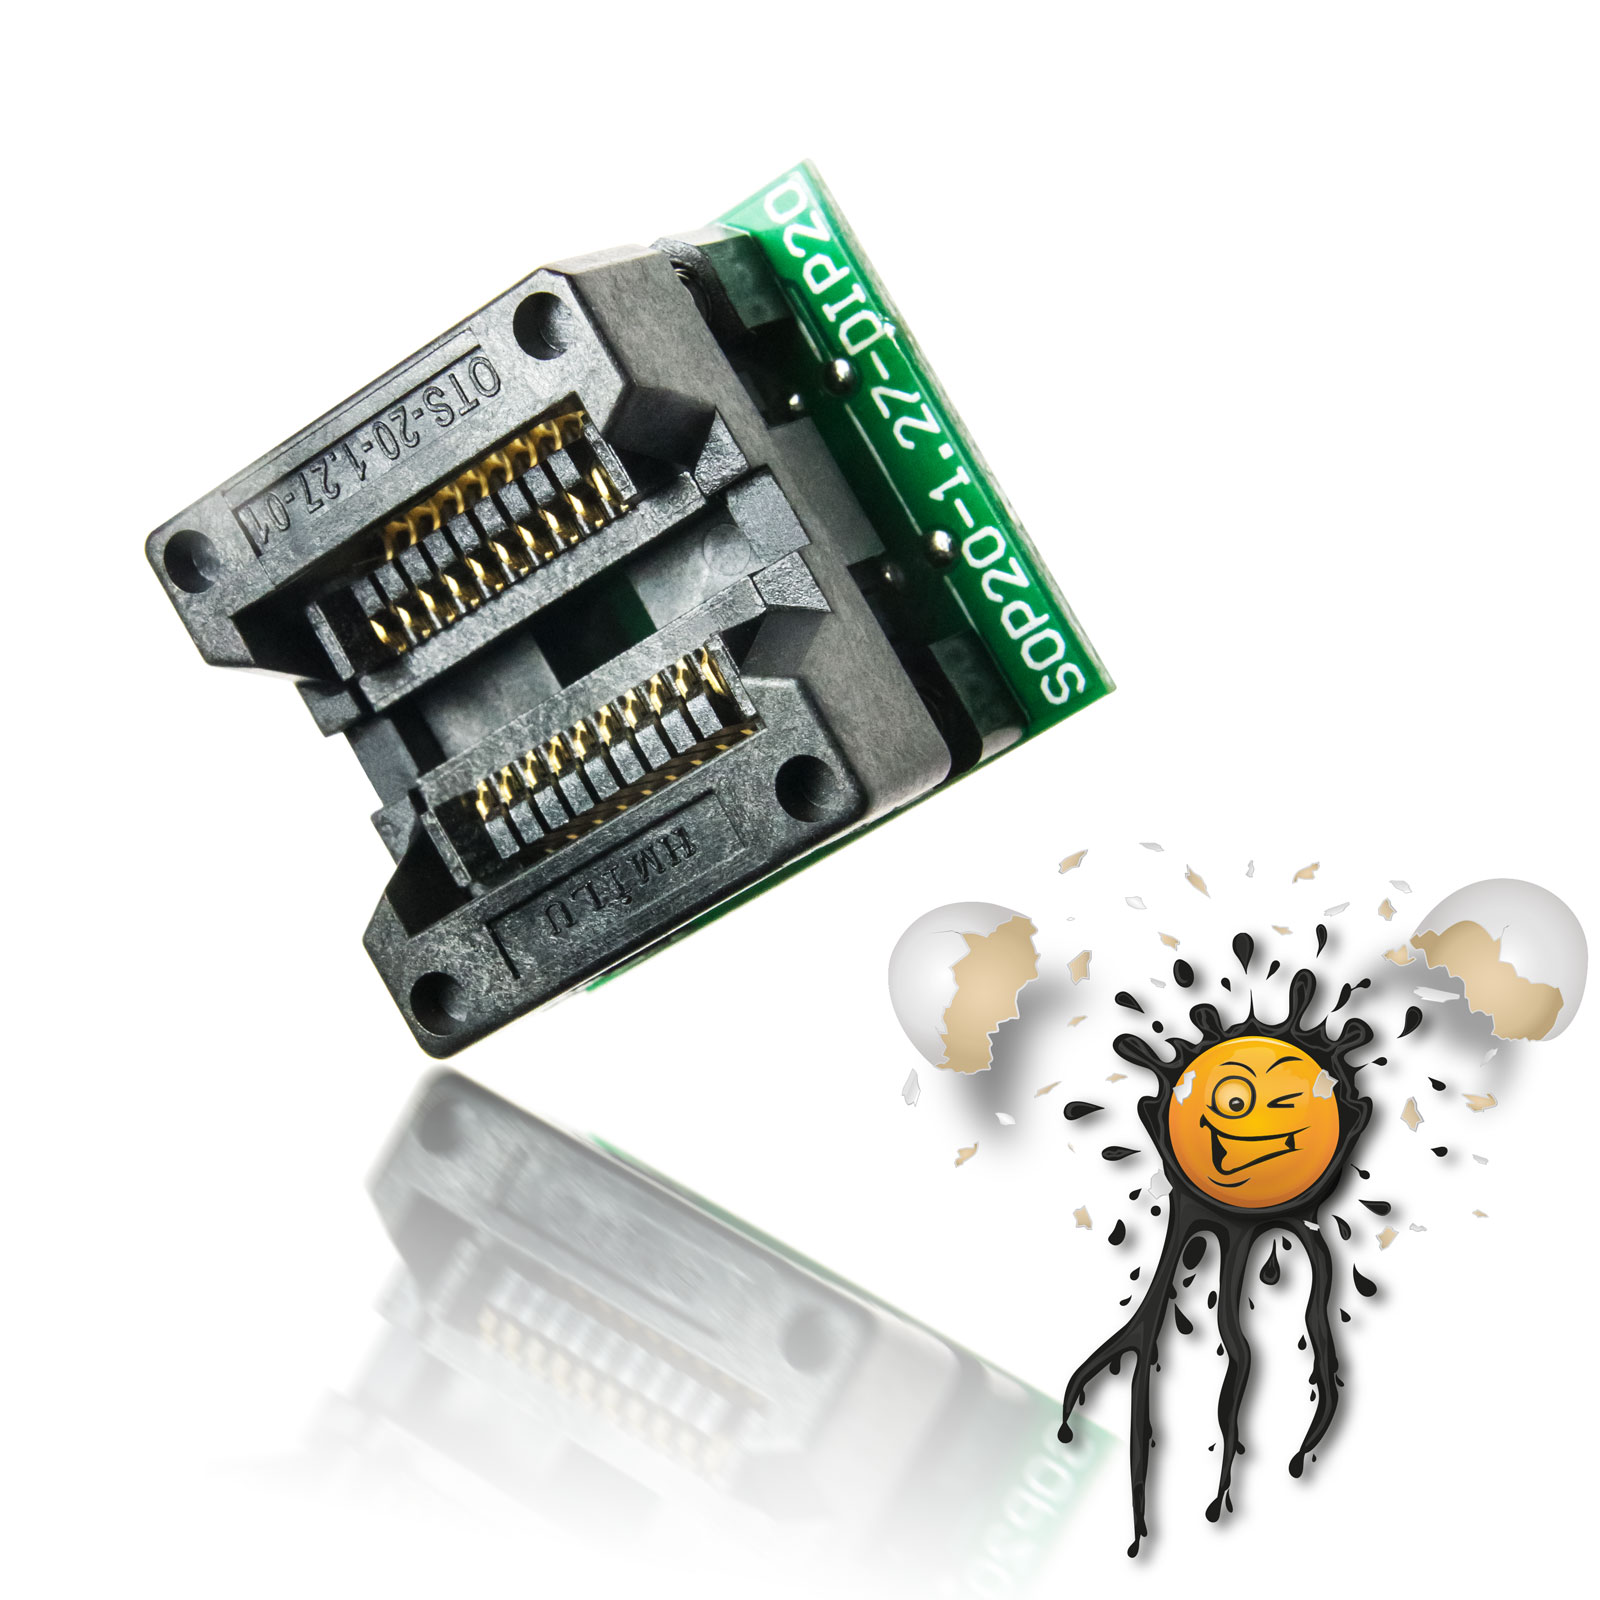 SOIC20 SOP20 to 20 Pin Socket Converter Module